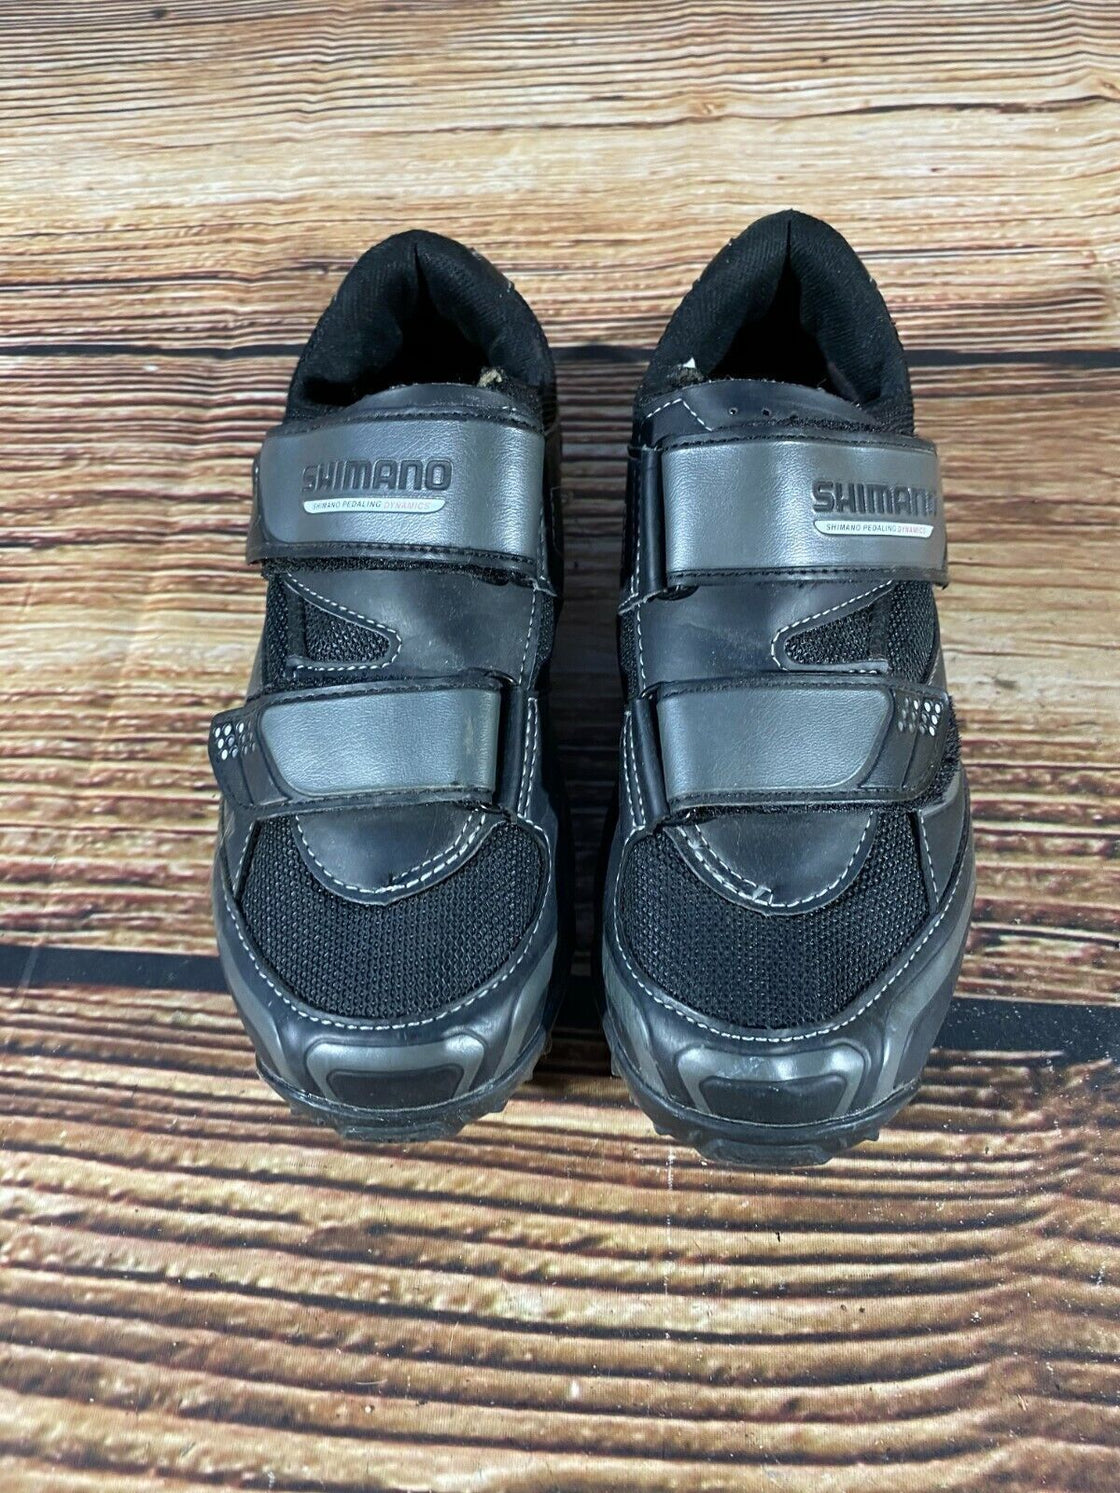 SHIMANO M064 Cycling MTB Shoes Mountain Biking Boots Size EU39 with Cleats